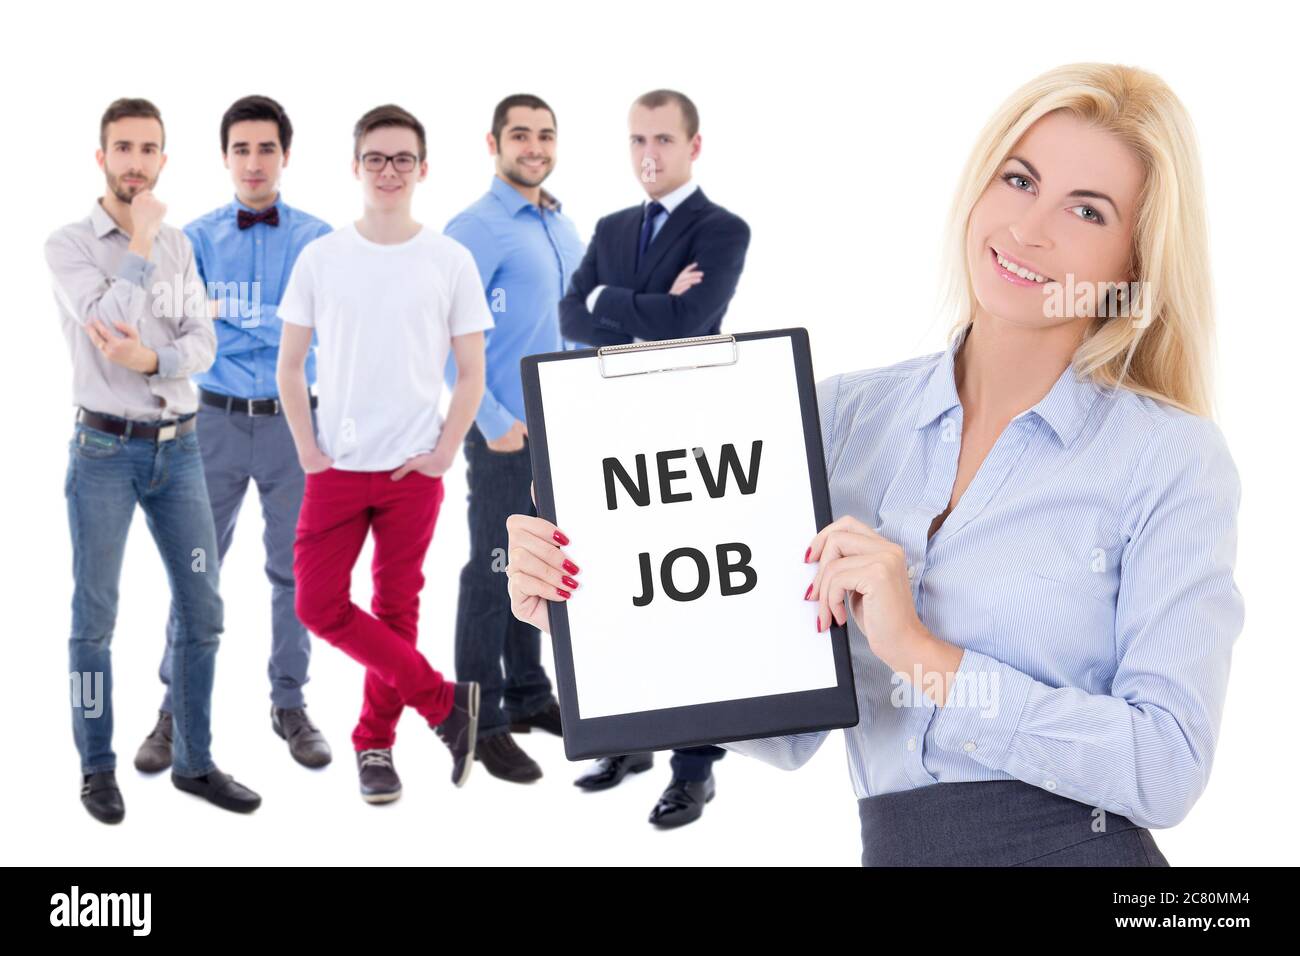 concetto di ricerca di lavoro - uomini d'affari e donna che tengono appunti con il testo 'nuovo lavoro' isolato su sfondo bianco Foto Stock